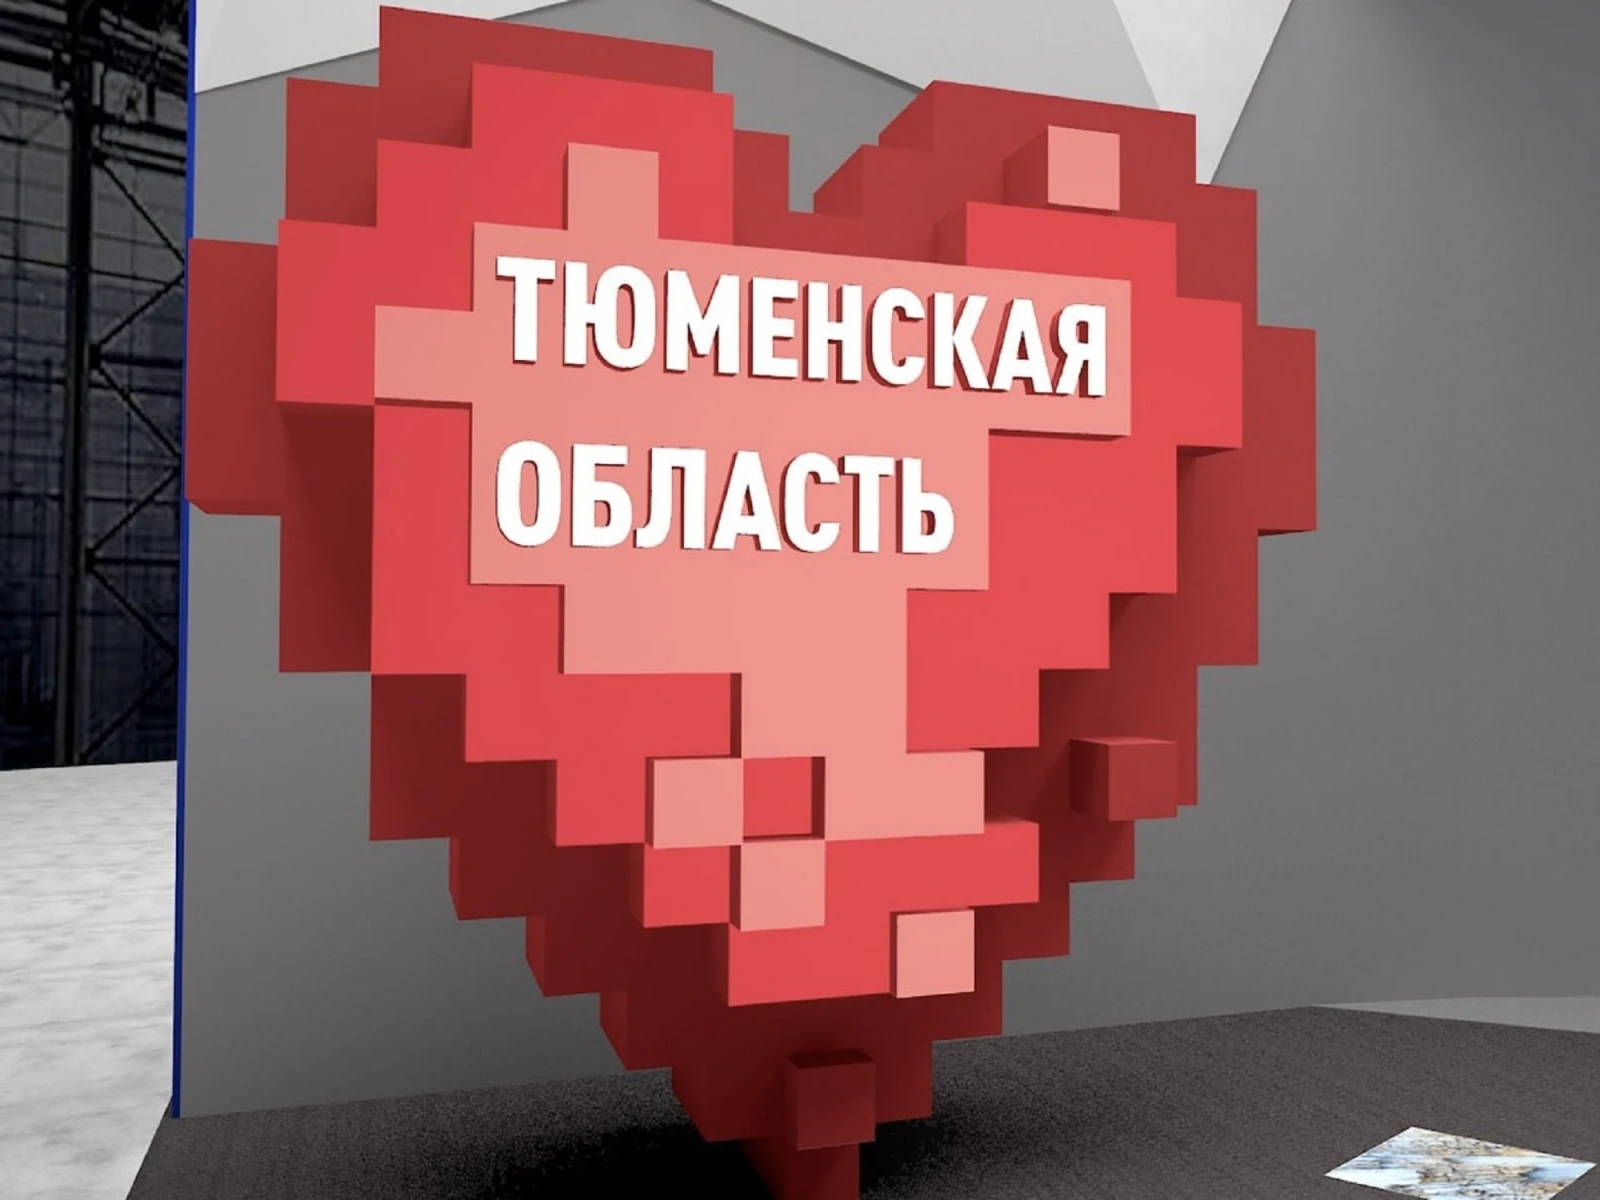 Тюменцы создадут арт-объект в виде сердца для выставки "Россия"